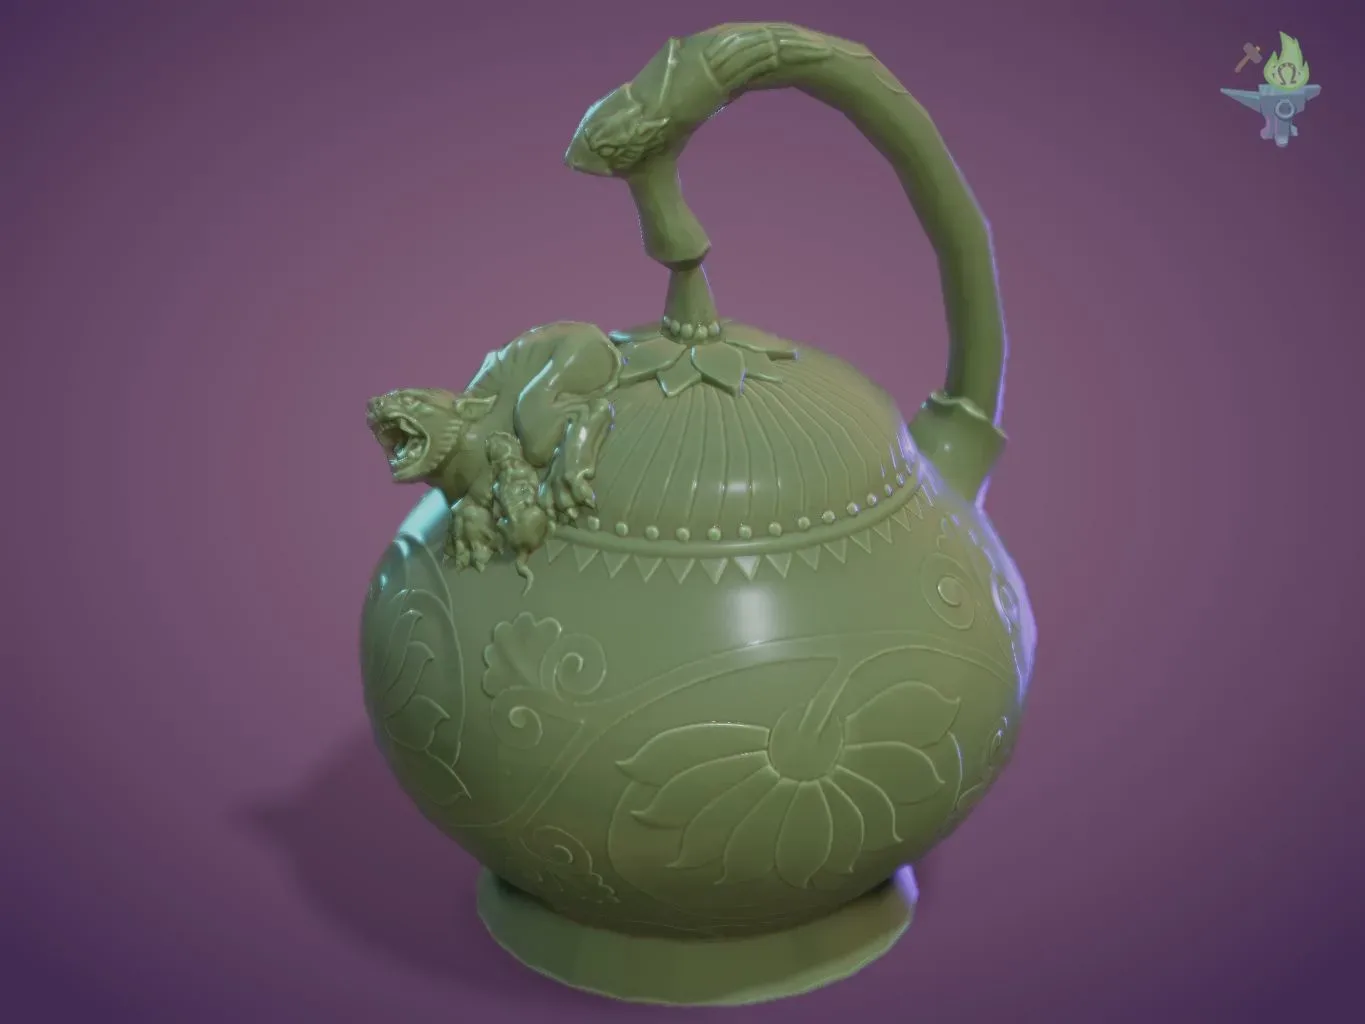 Yaozhou Porcelain Mystery Teapot